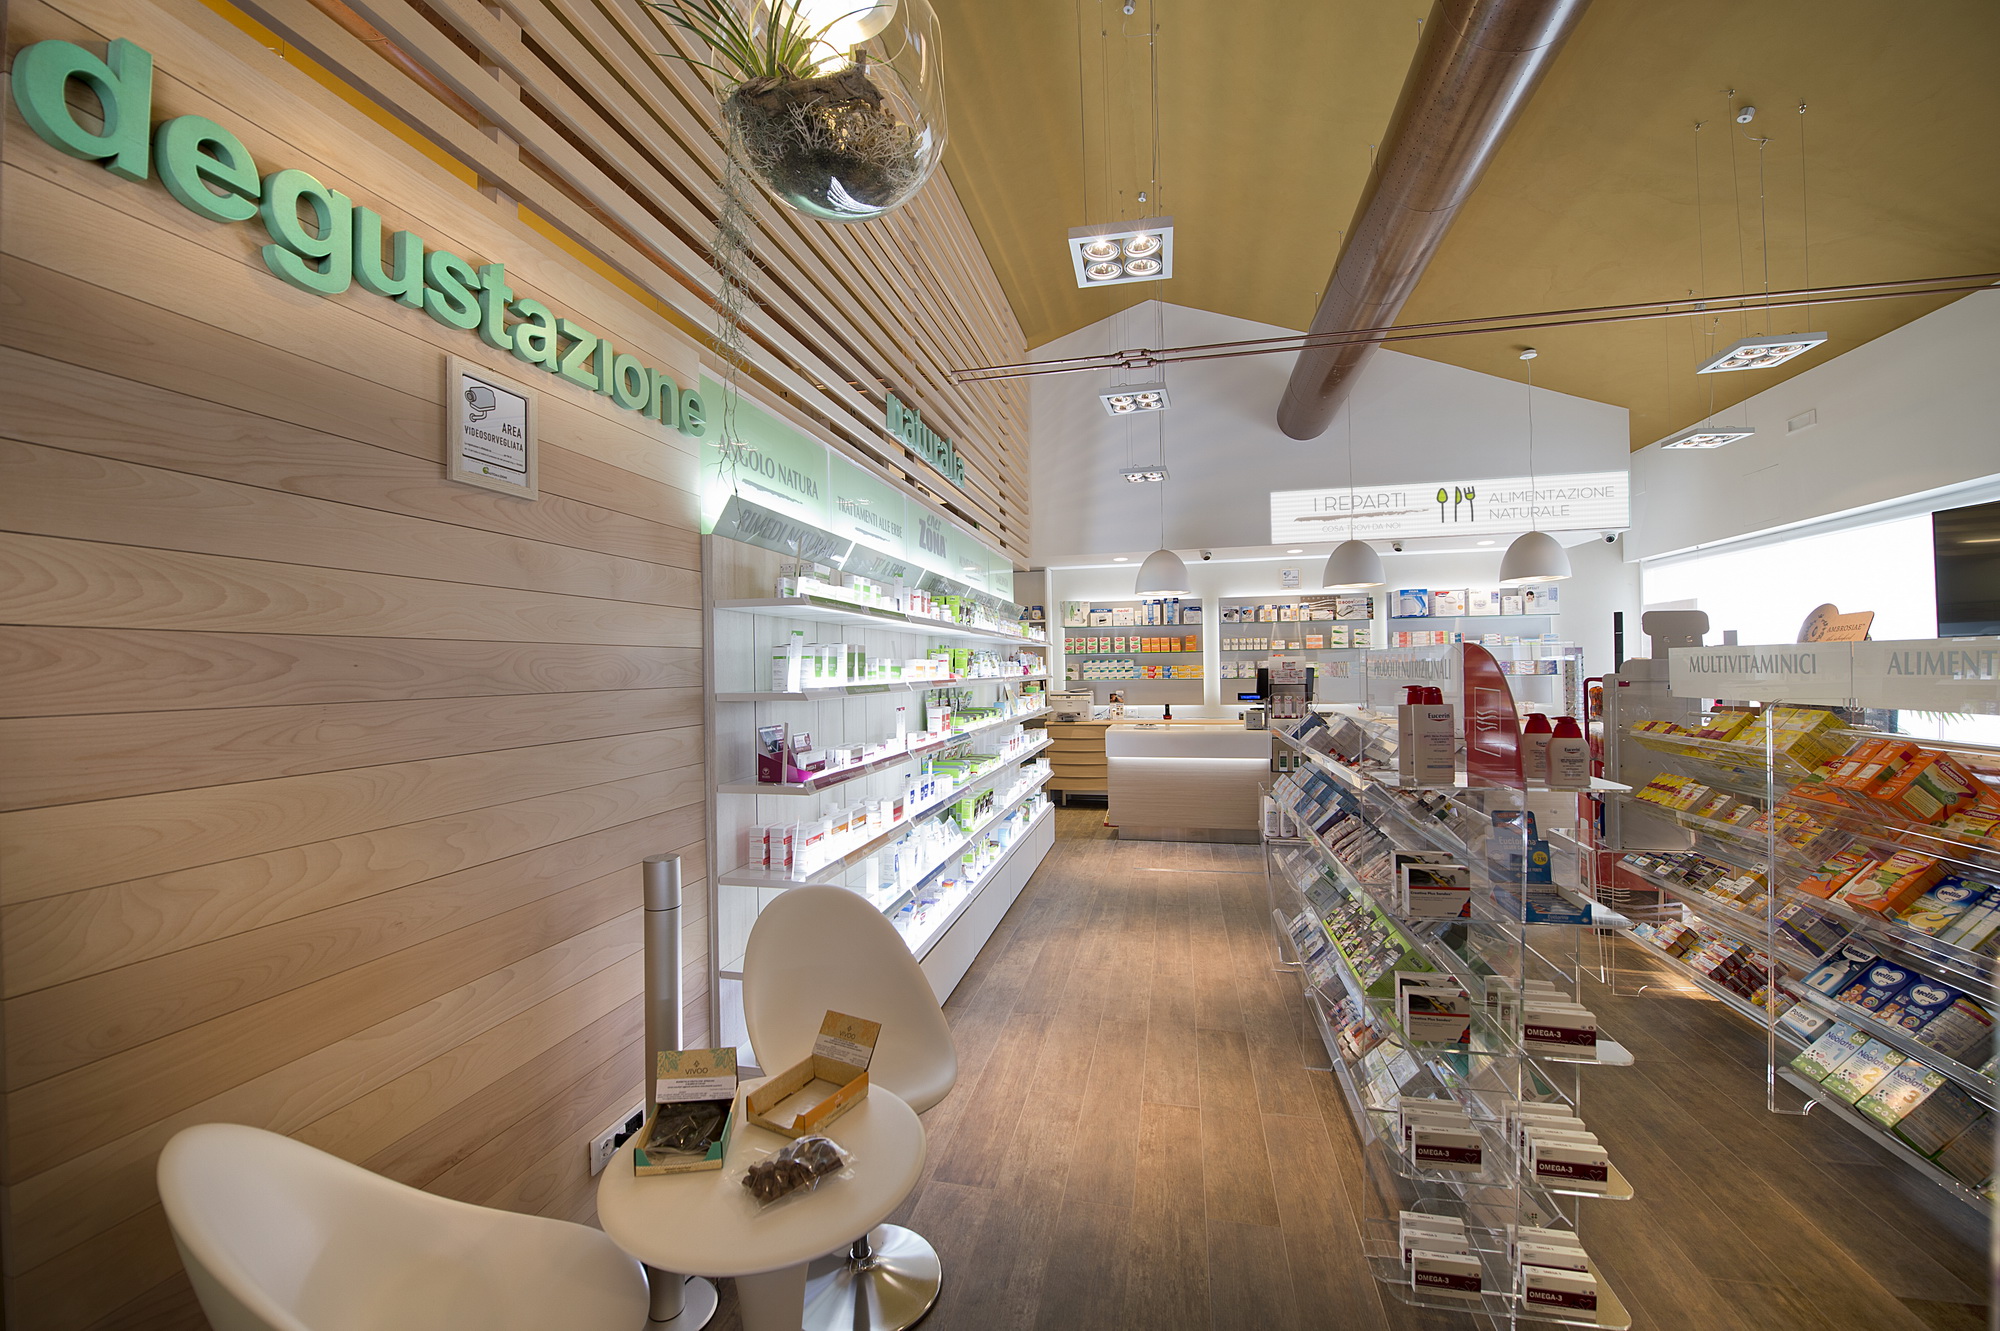 Pharmacy design Italy